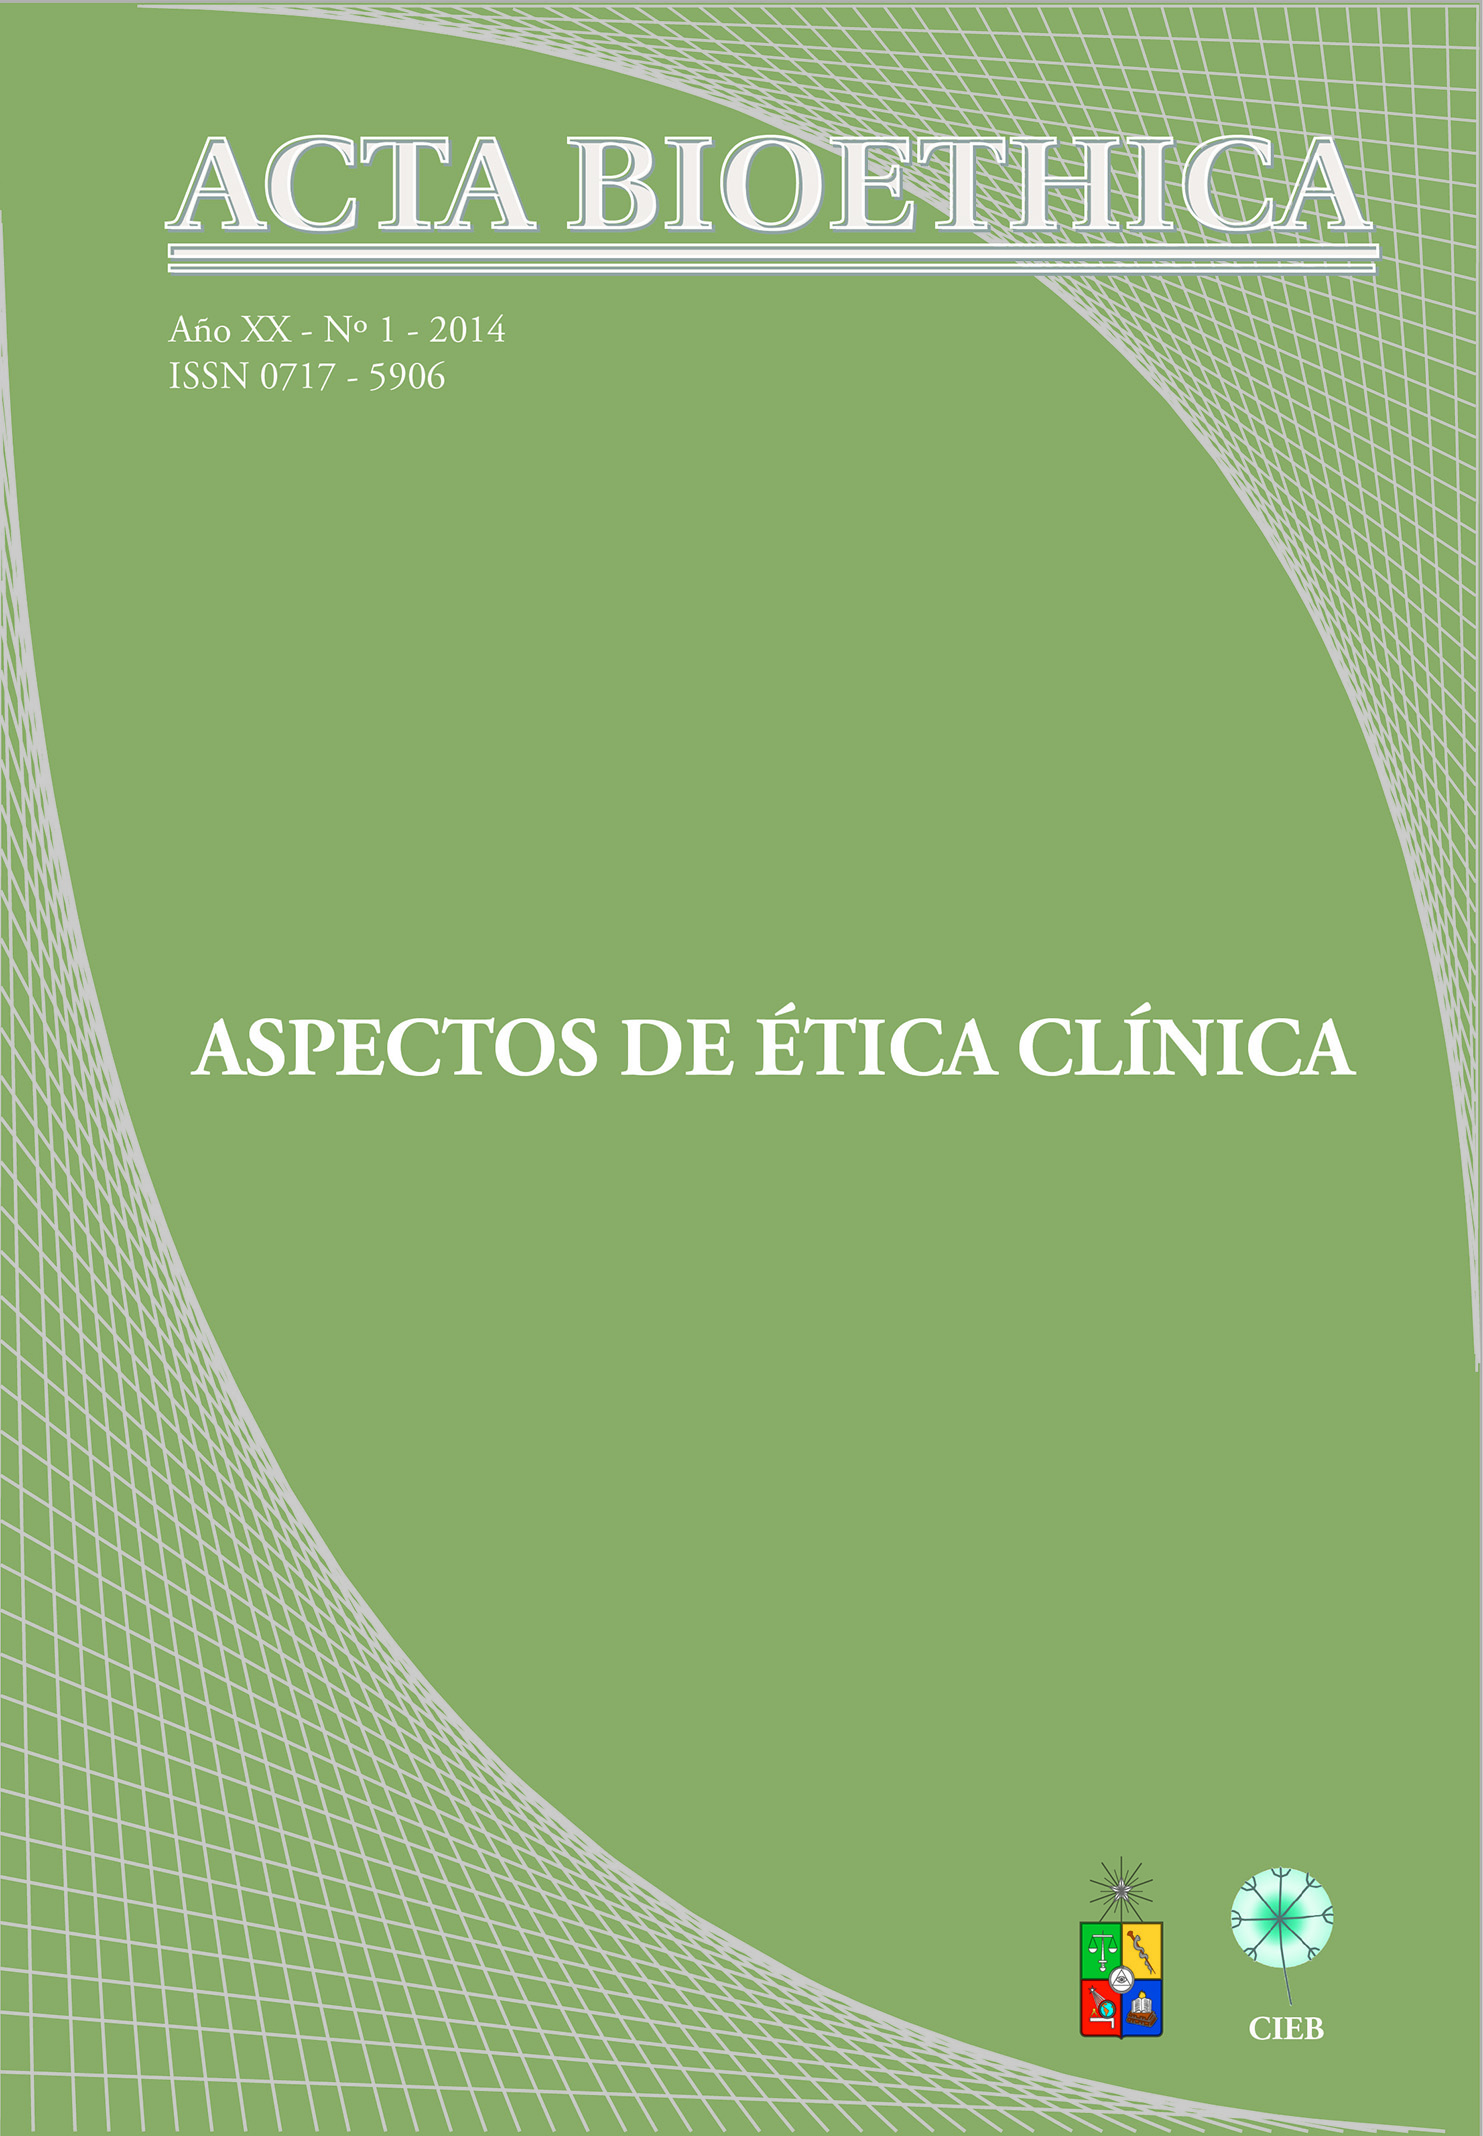 							Ver Vol. 20 Núm. 1 (2014): Aspectos de Ética Clínica
						